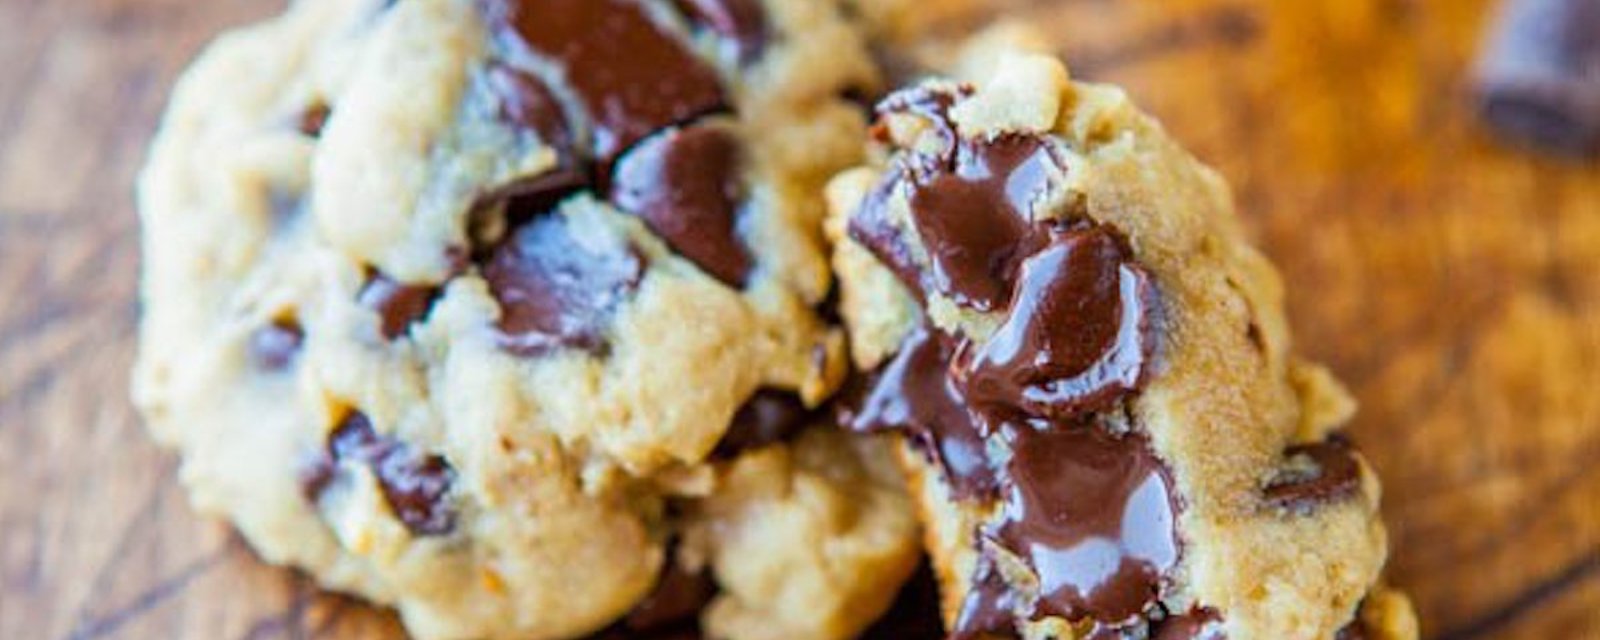 Le fromage à la crème peut élever vos biscuits aux pépites de chocolat à un autre niveau. Voici une recette facile!